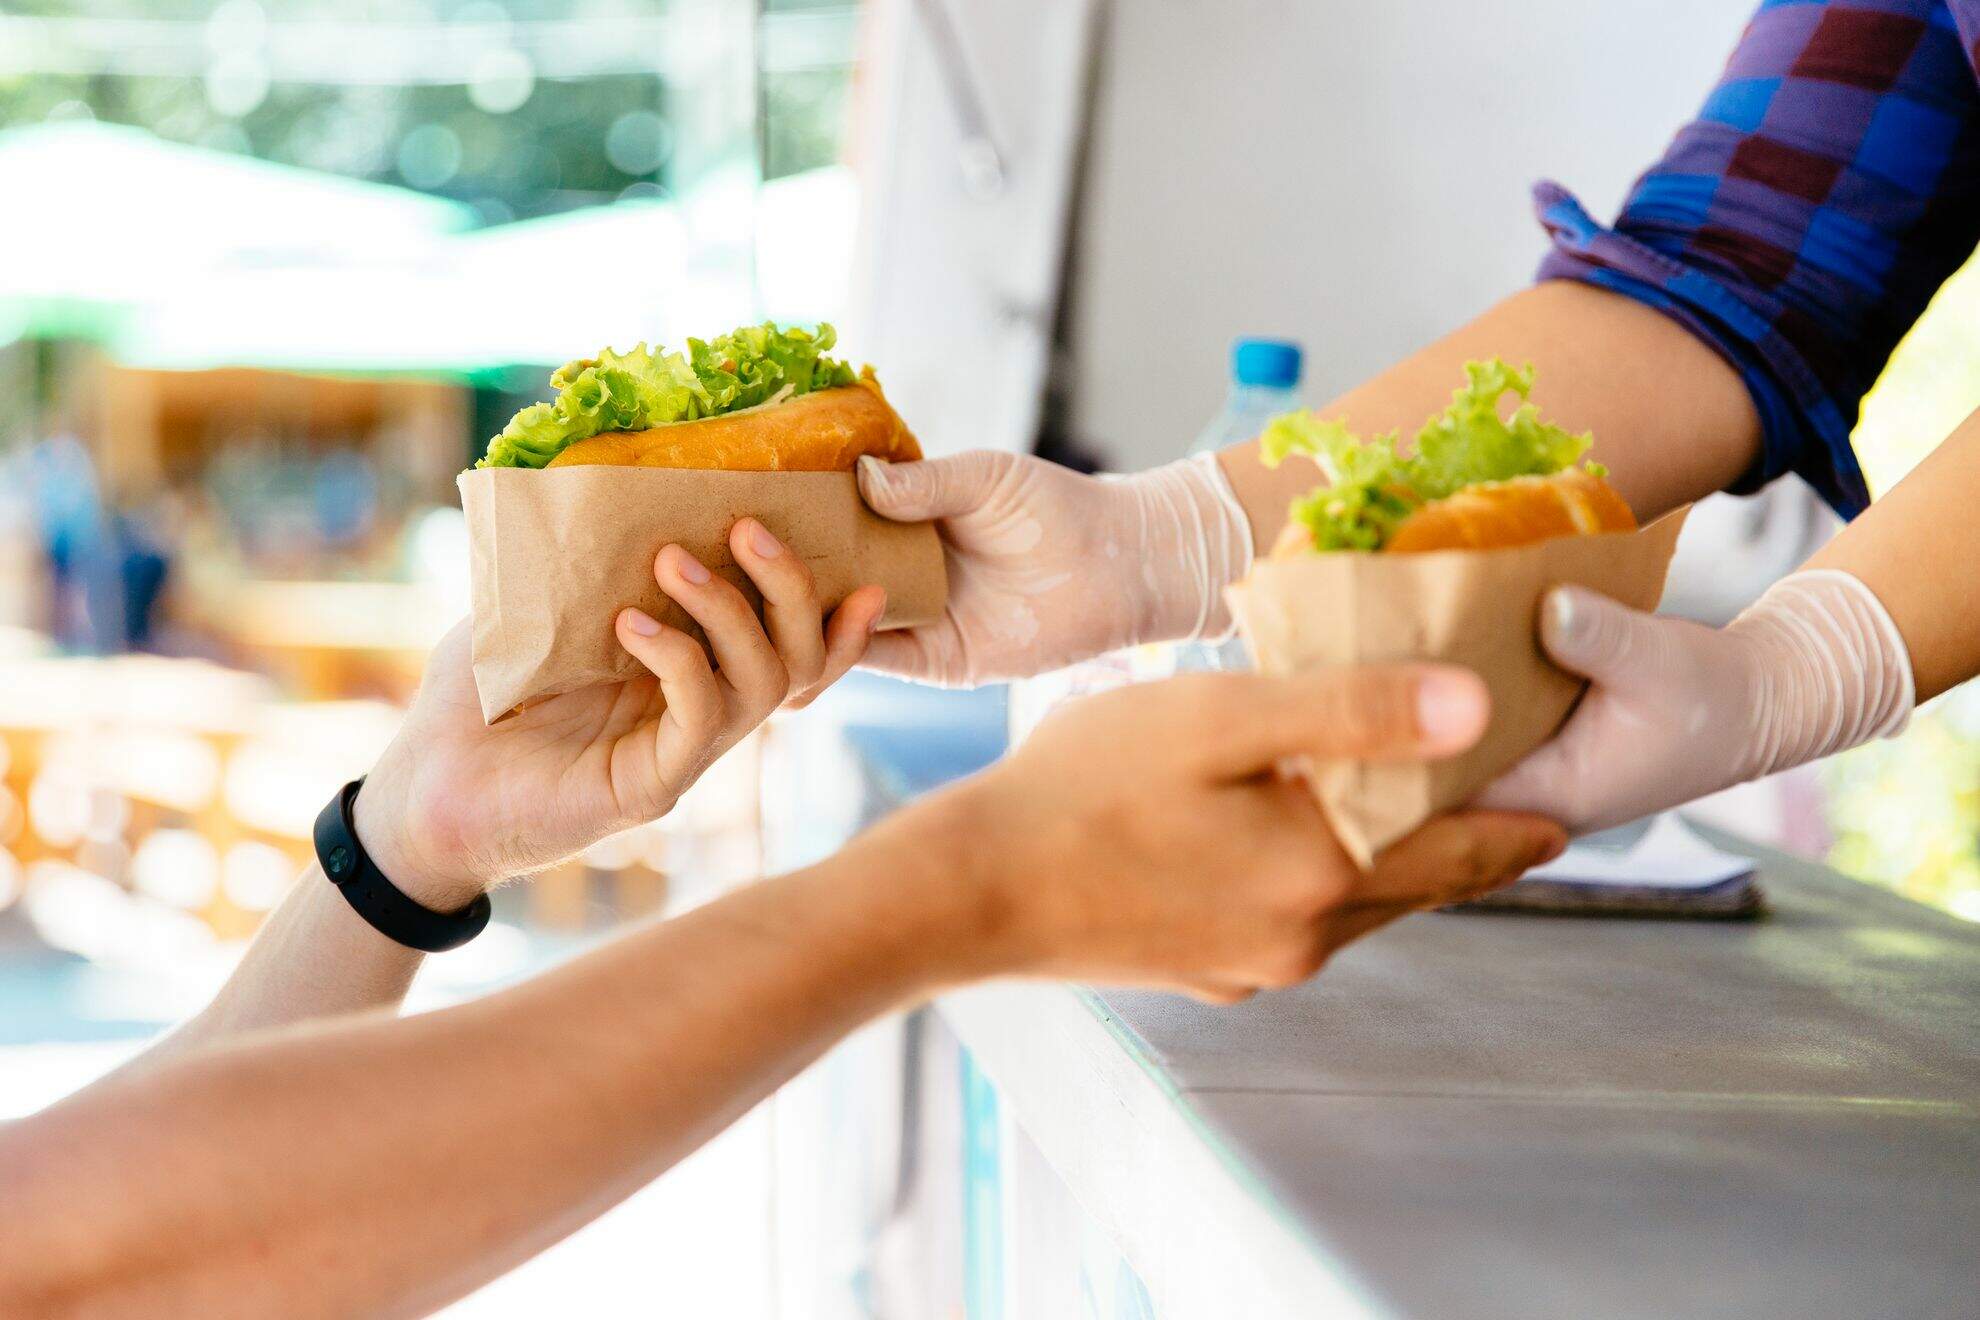 Mãos saindo de dentro de um foodtruck, entregando sanduíches para uma pessoa.